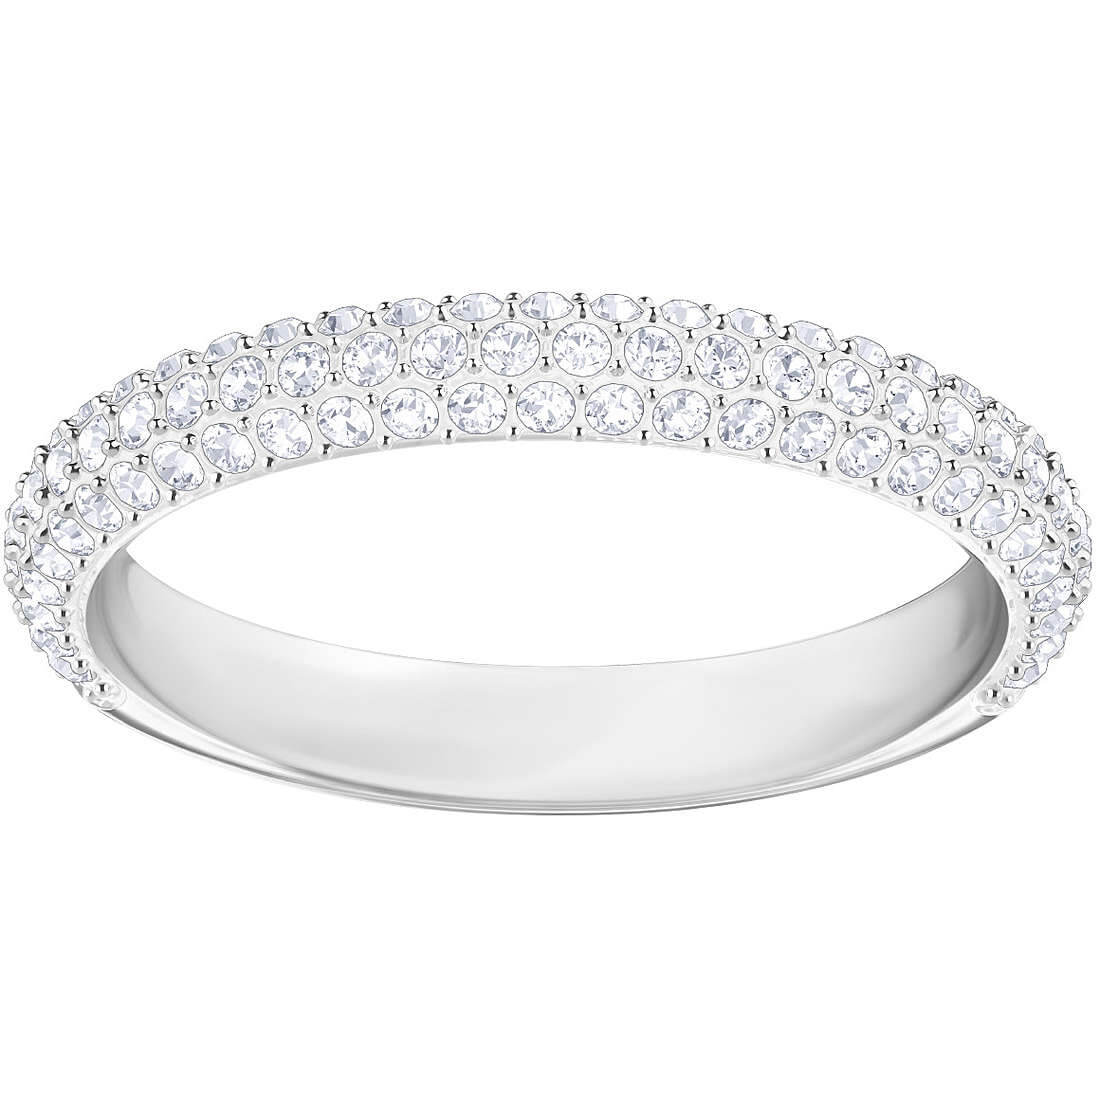 Swarovski Luxusní prsten s krystaly Swarovski Stone 5383948 58 mm